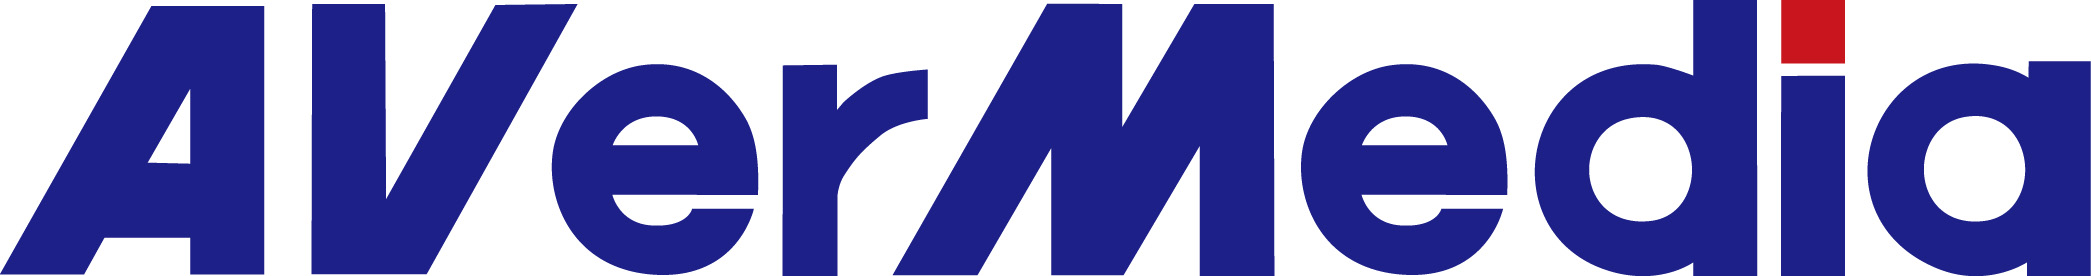 圓剛科技股份有限公司-Logo